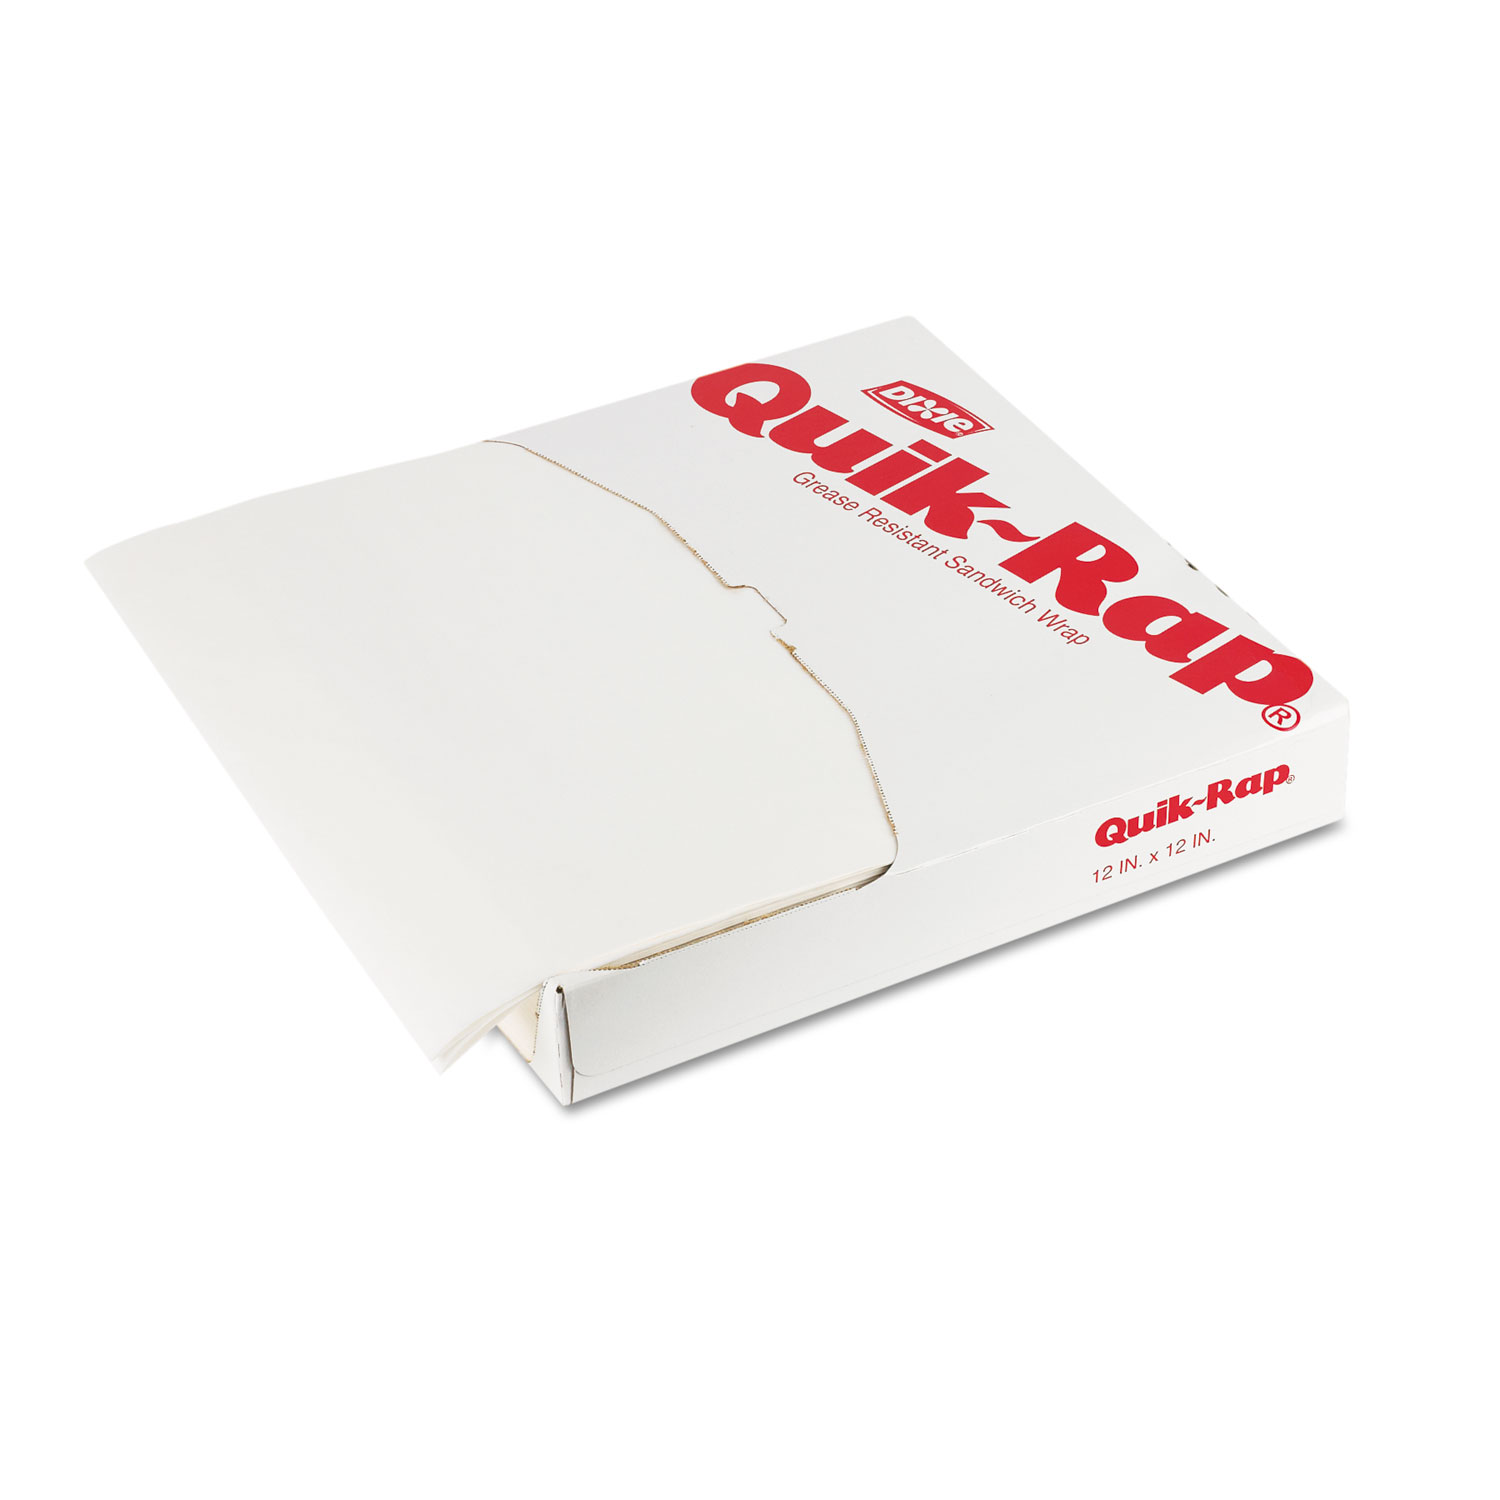  Dixie DIX 891255 Quik-Rap Grease-Resistant Waxed Sandwich Paper, 15x16 OpaqueWhite 1000/PK 3PK/CT (DXE891255) 